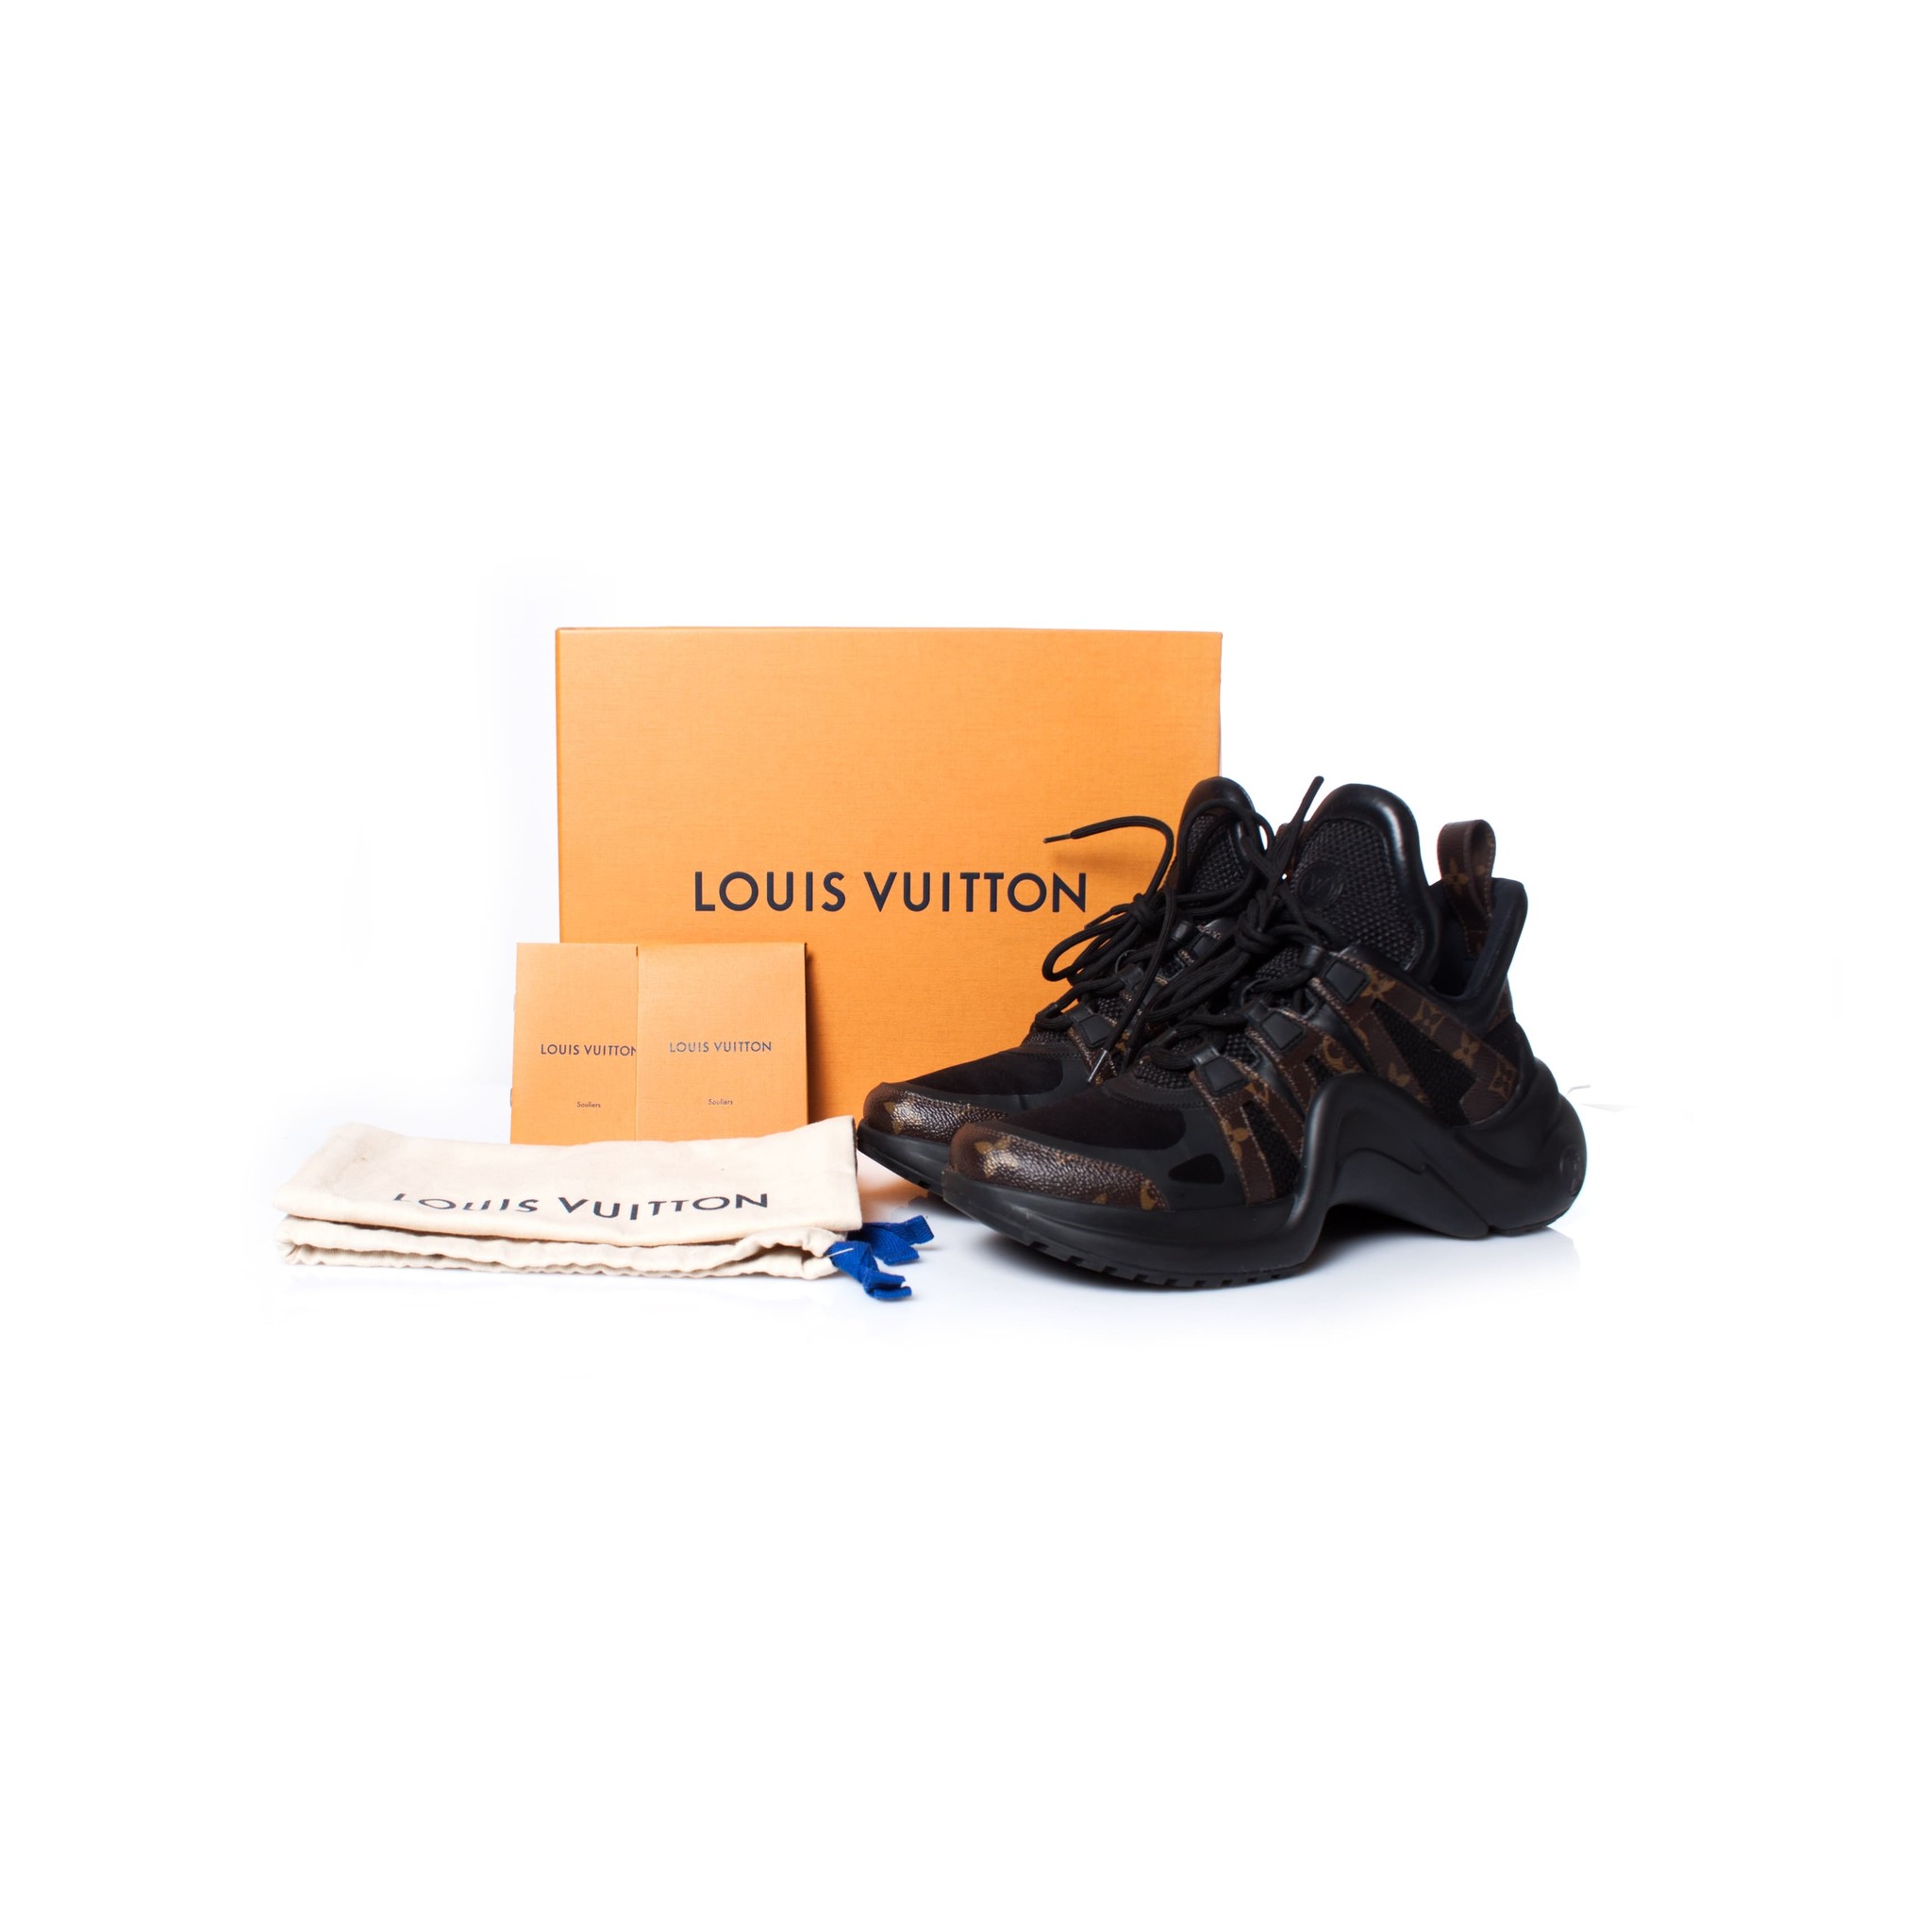 Louis Vuitton Archlight sneaker unboxing & review ! + extra bonus item  double unboxing ! 